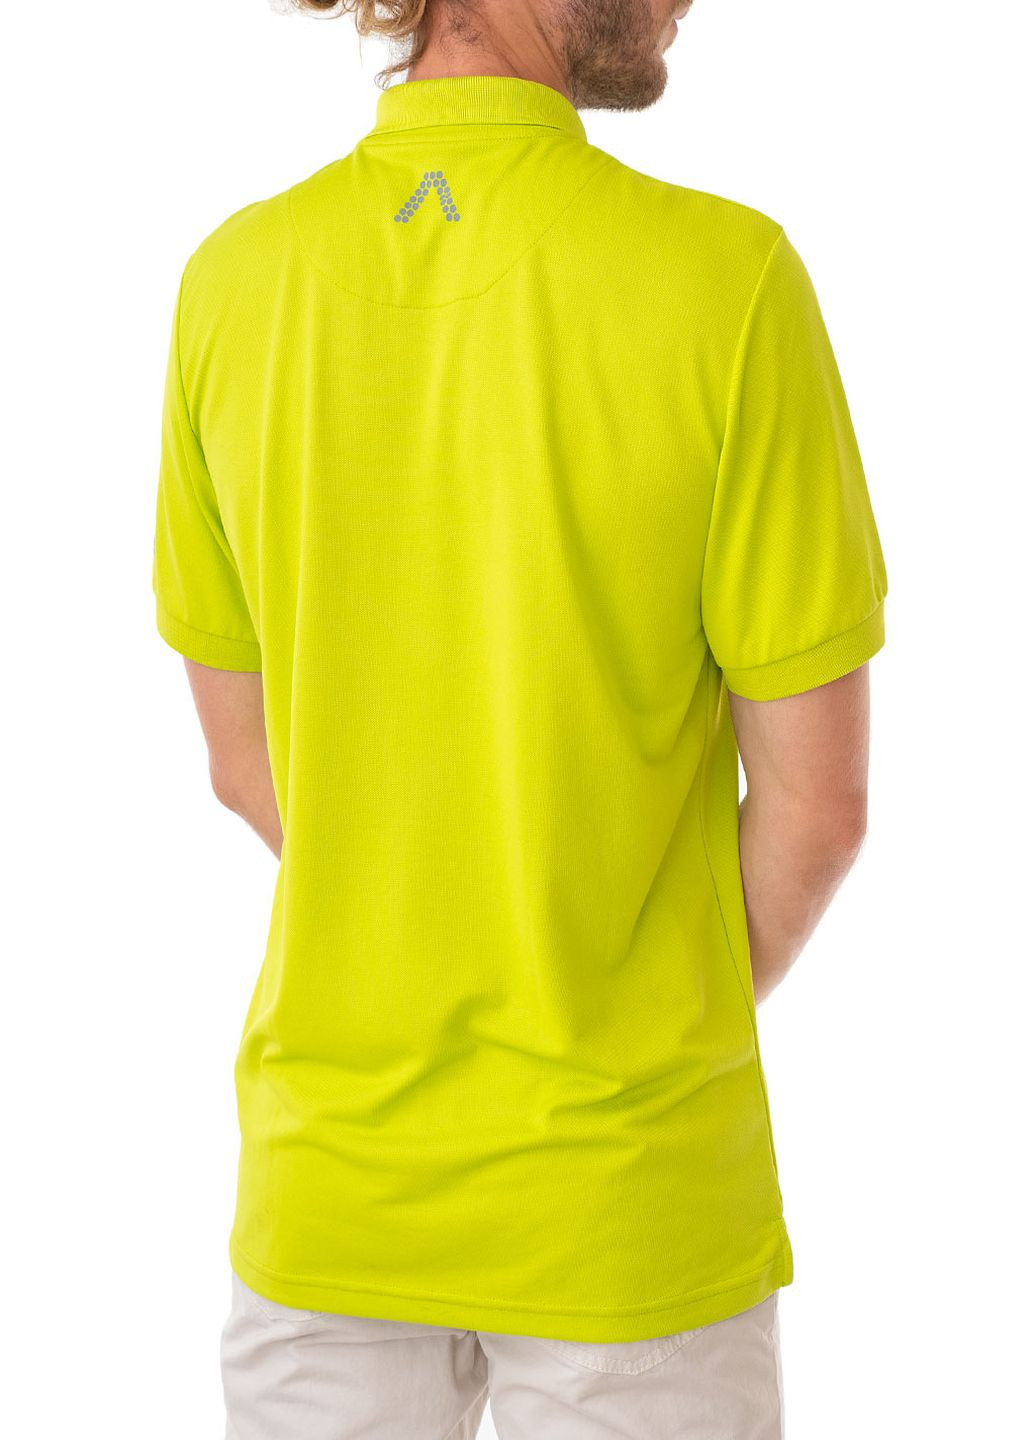 Салатовая футболка-поло для мужчин Alberto однотонная